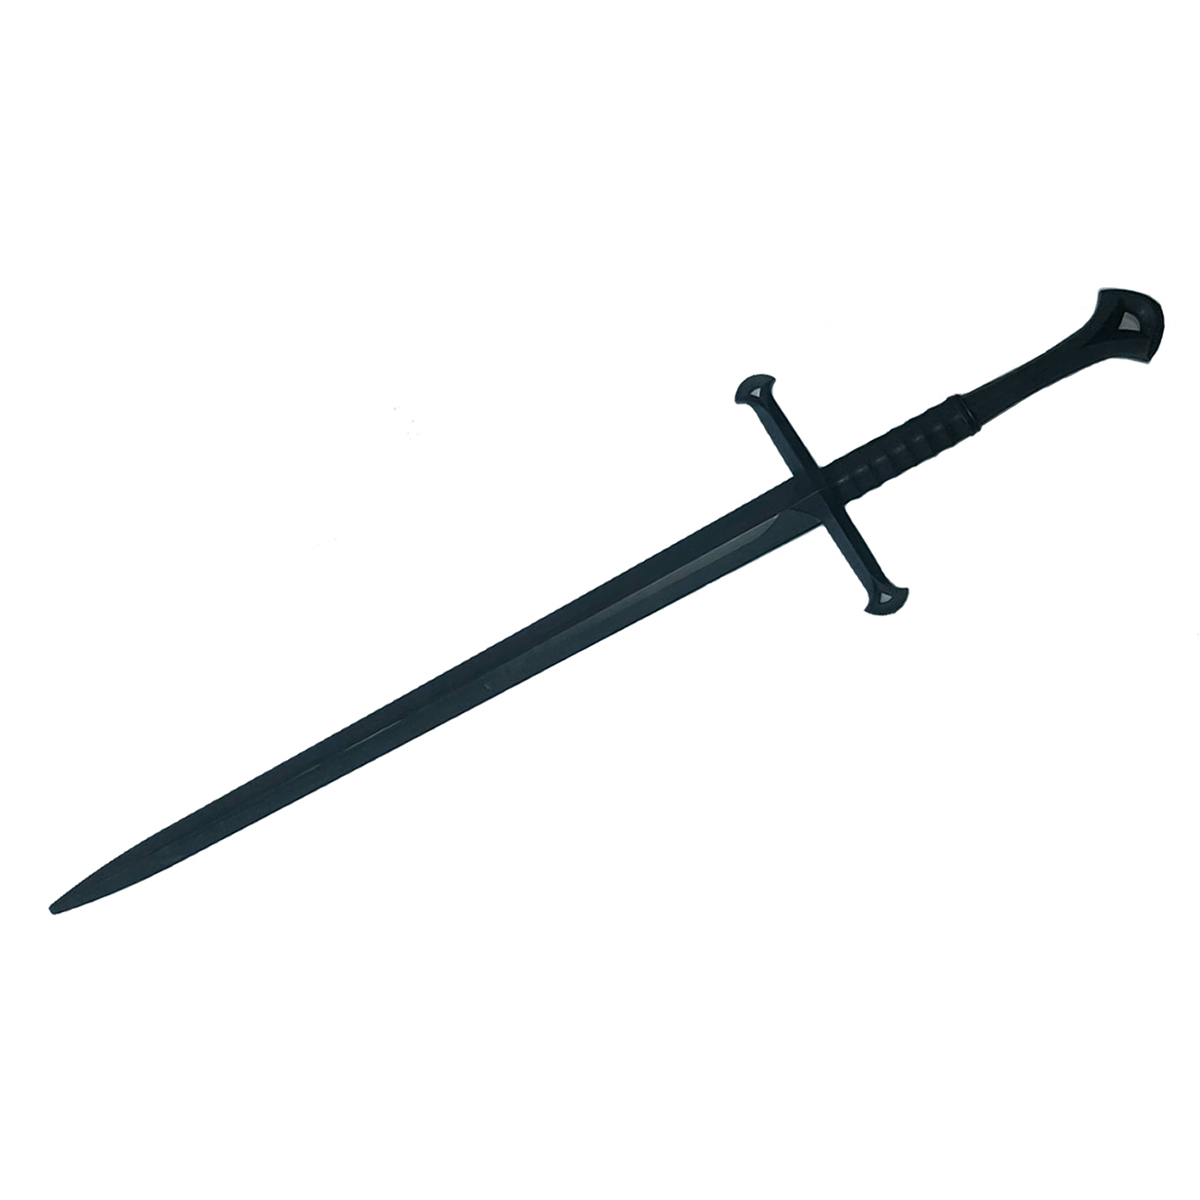 Black Polypropylene Full Contact Anduril Narsil Sword - 45.7" - Click Image to Close